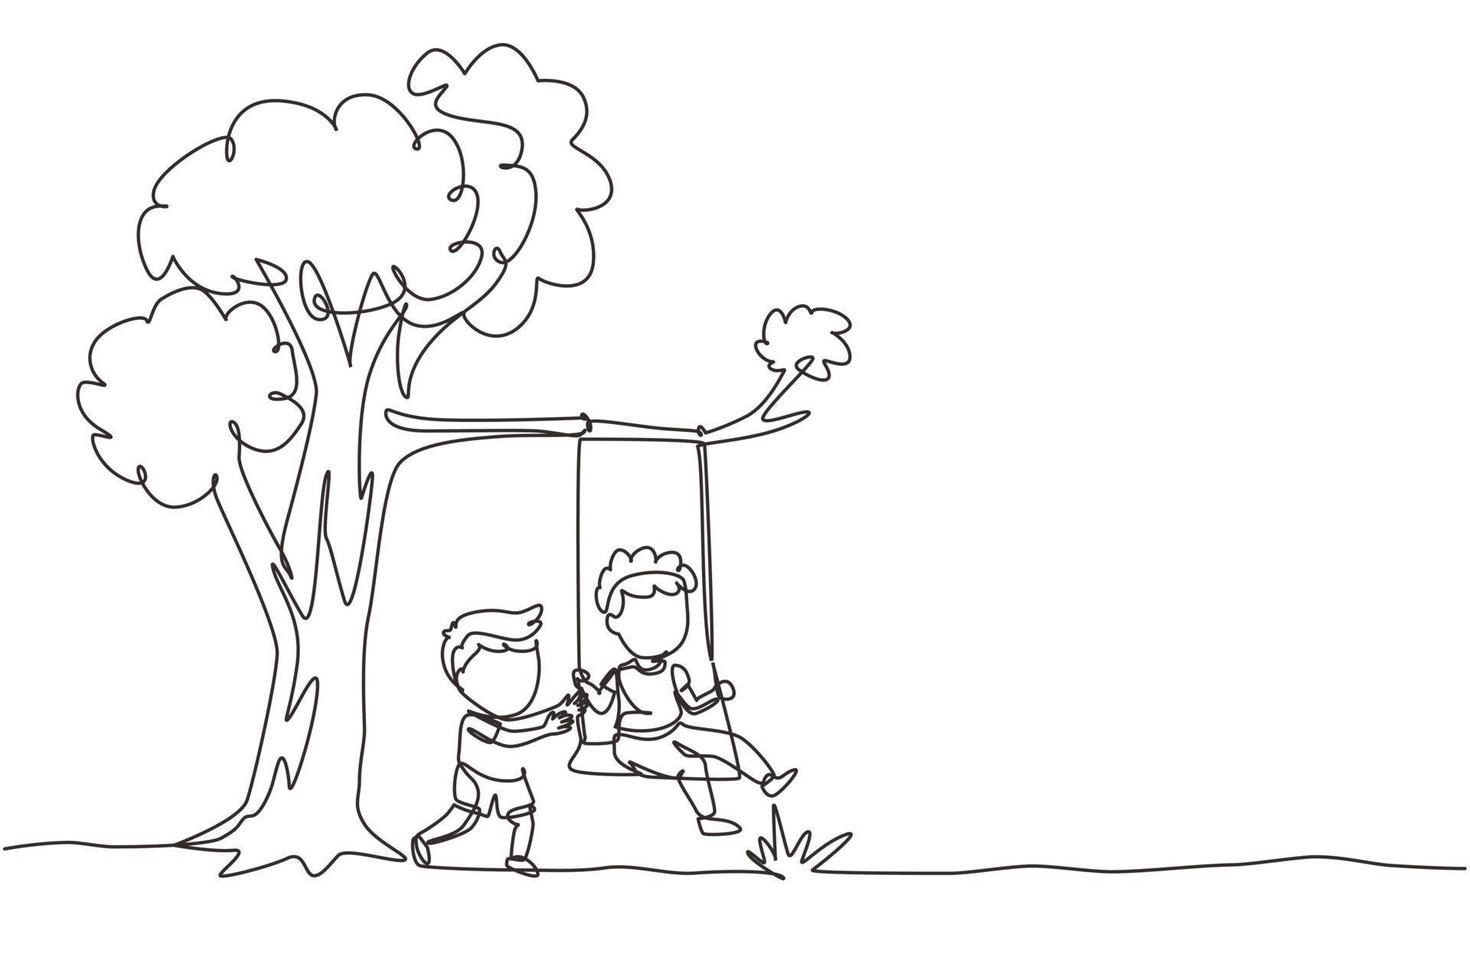 disegno a linea continua singola felici due ragazzi che giocano sull'altalena dell'albero. bambini allegri sull'oscillazione sotto un albero. bambini che giocano al parco giochi. illustrazione vettoriale di disegno grafico dinamico di una linea